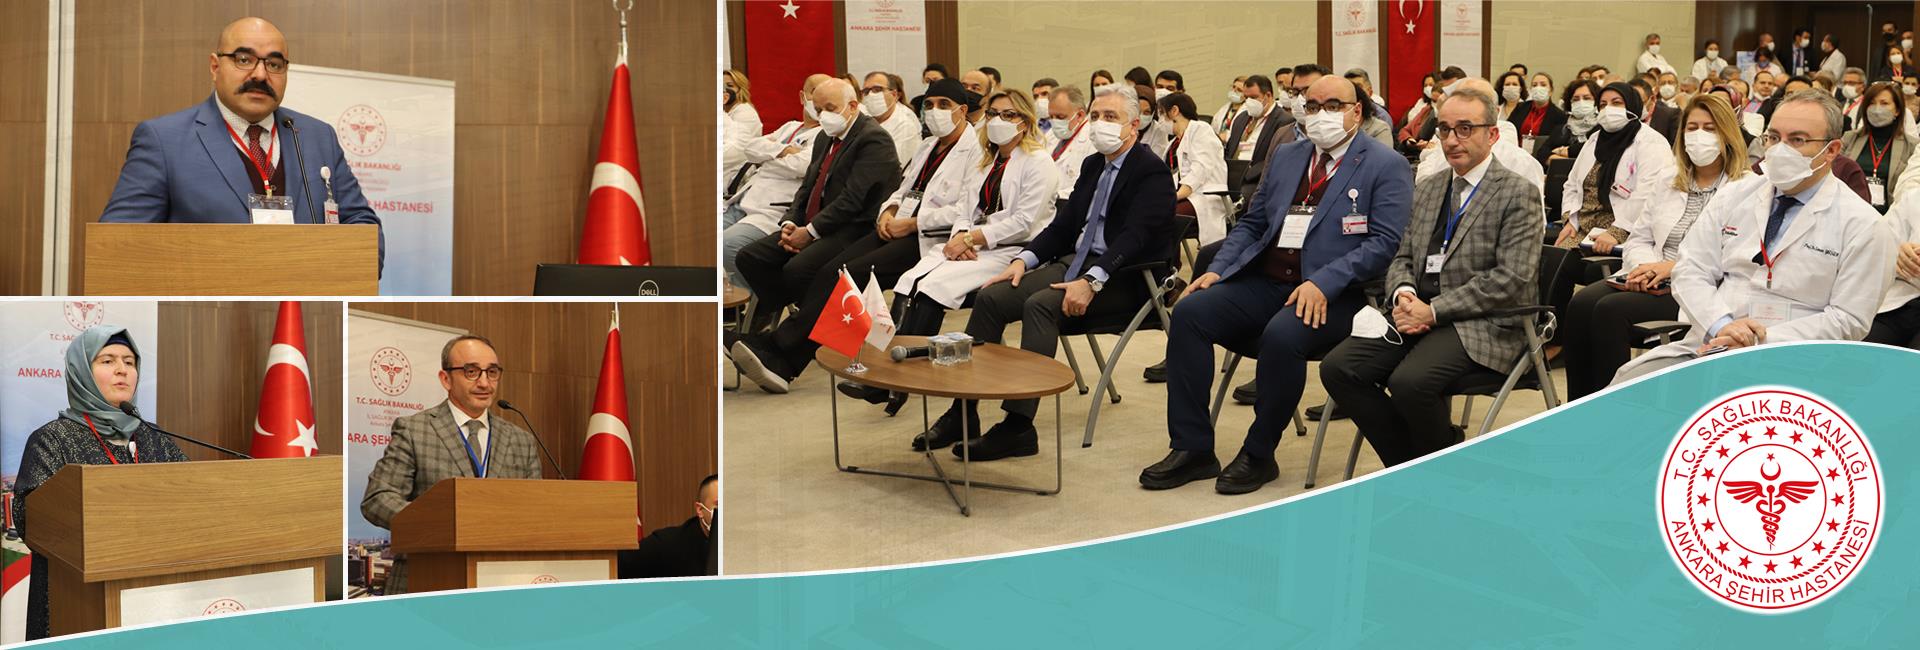 تم الانتهاء بنجاح من تقييمات الجودة الصحية لمستشفى مدينة أنقرة